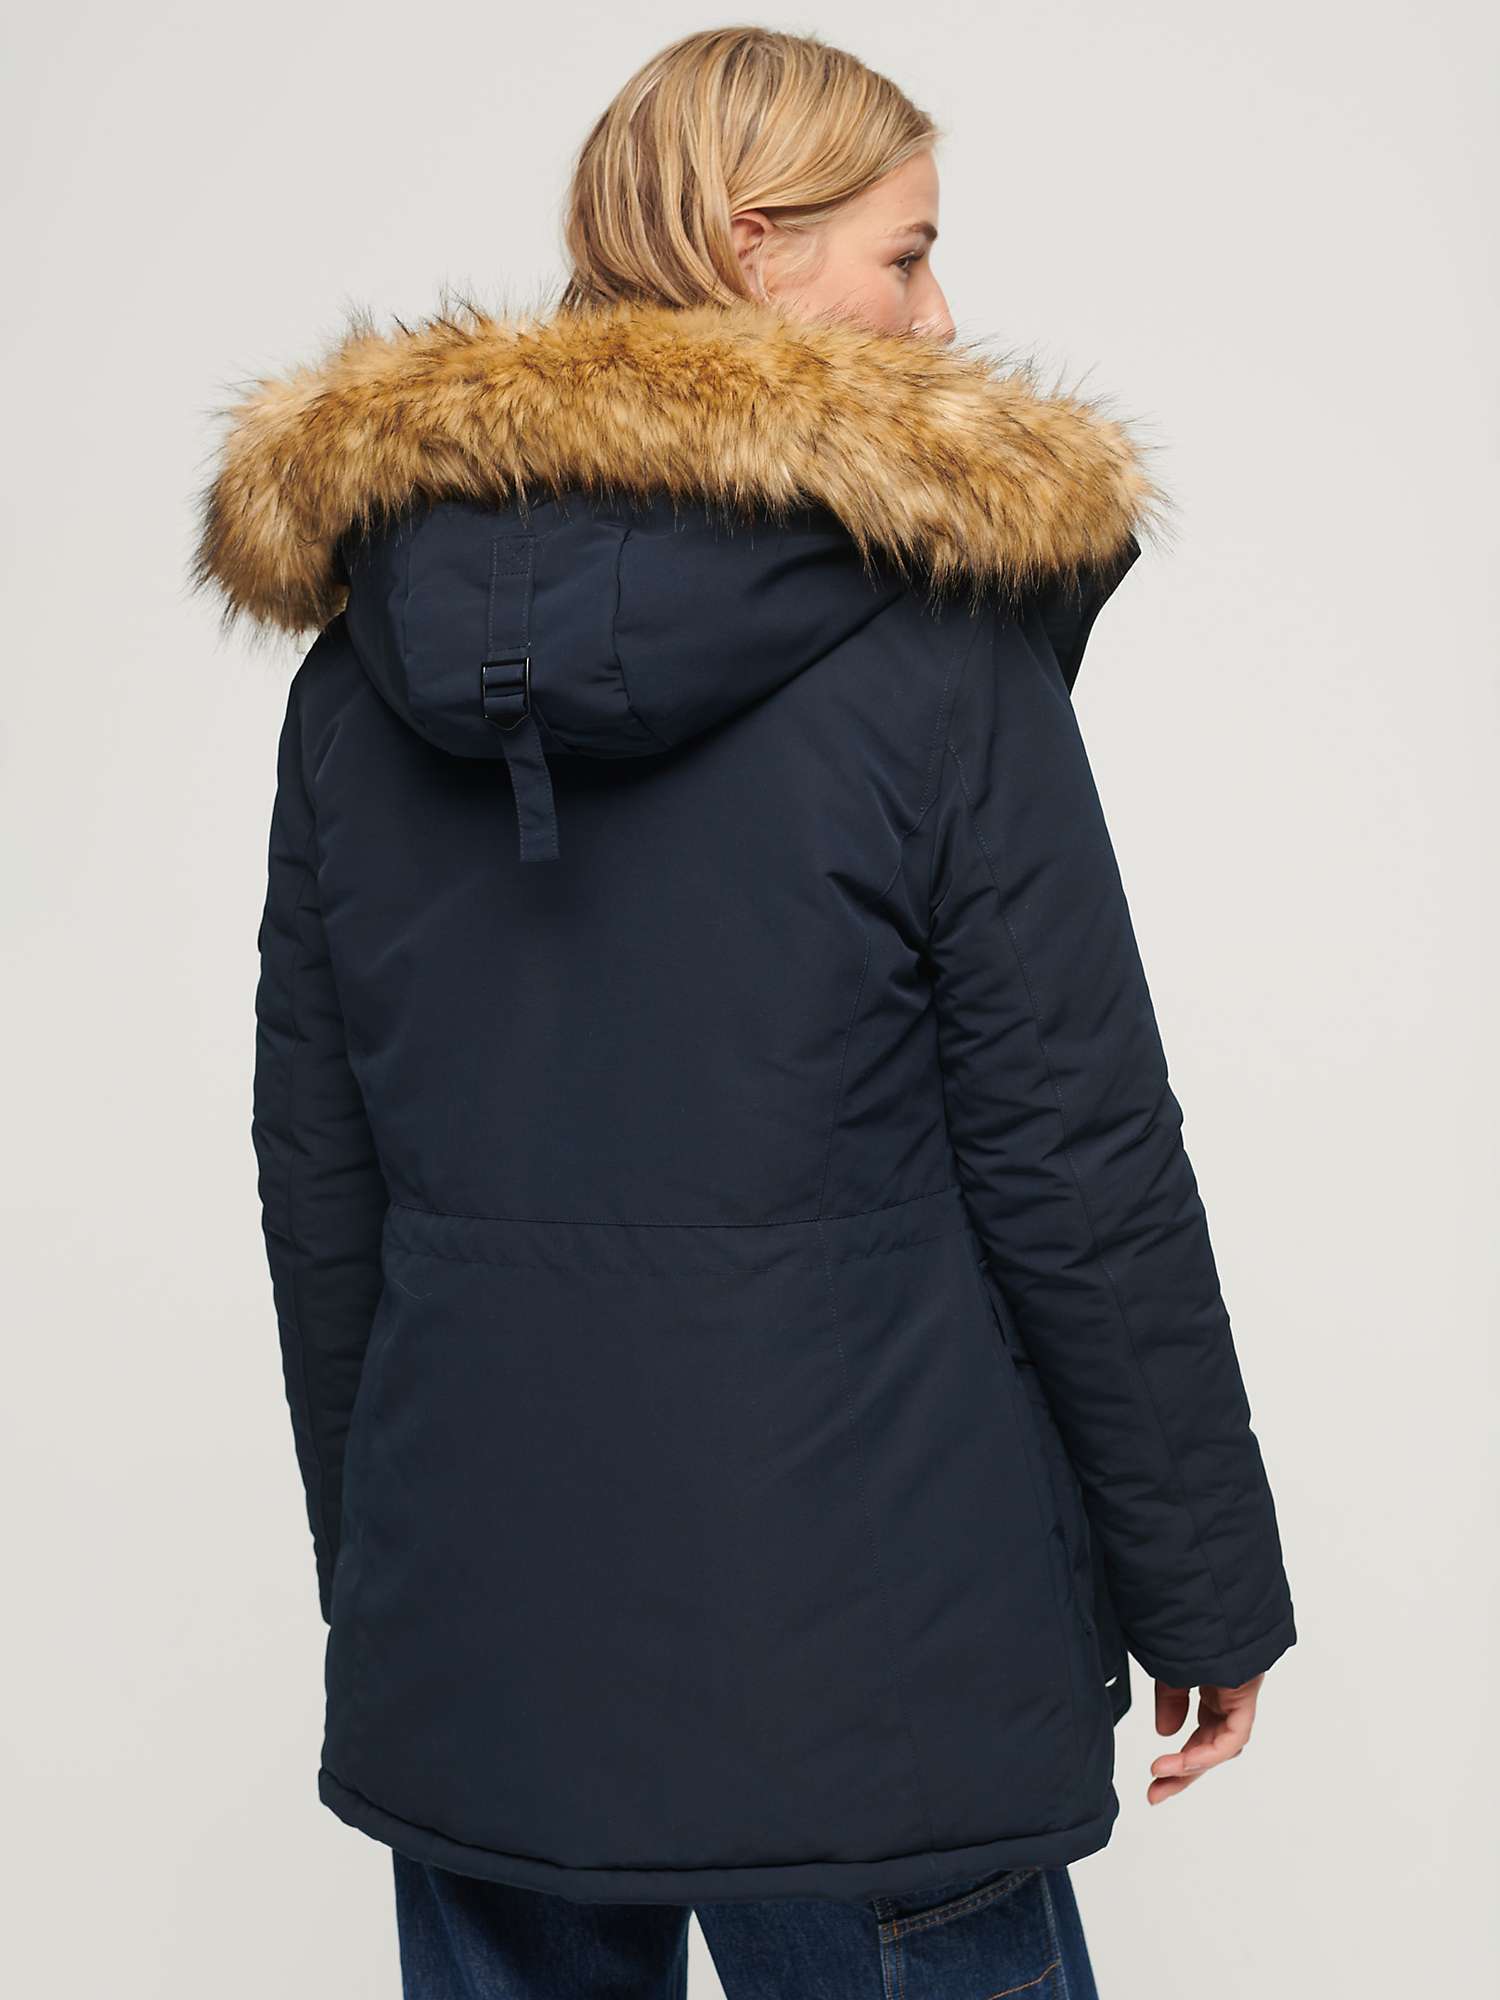 Buy Superdry Everest Faux Hooded Parka Coat, Navy Online at johnlewis.com